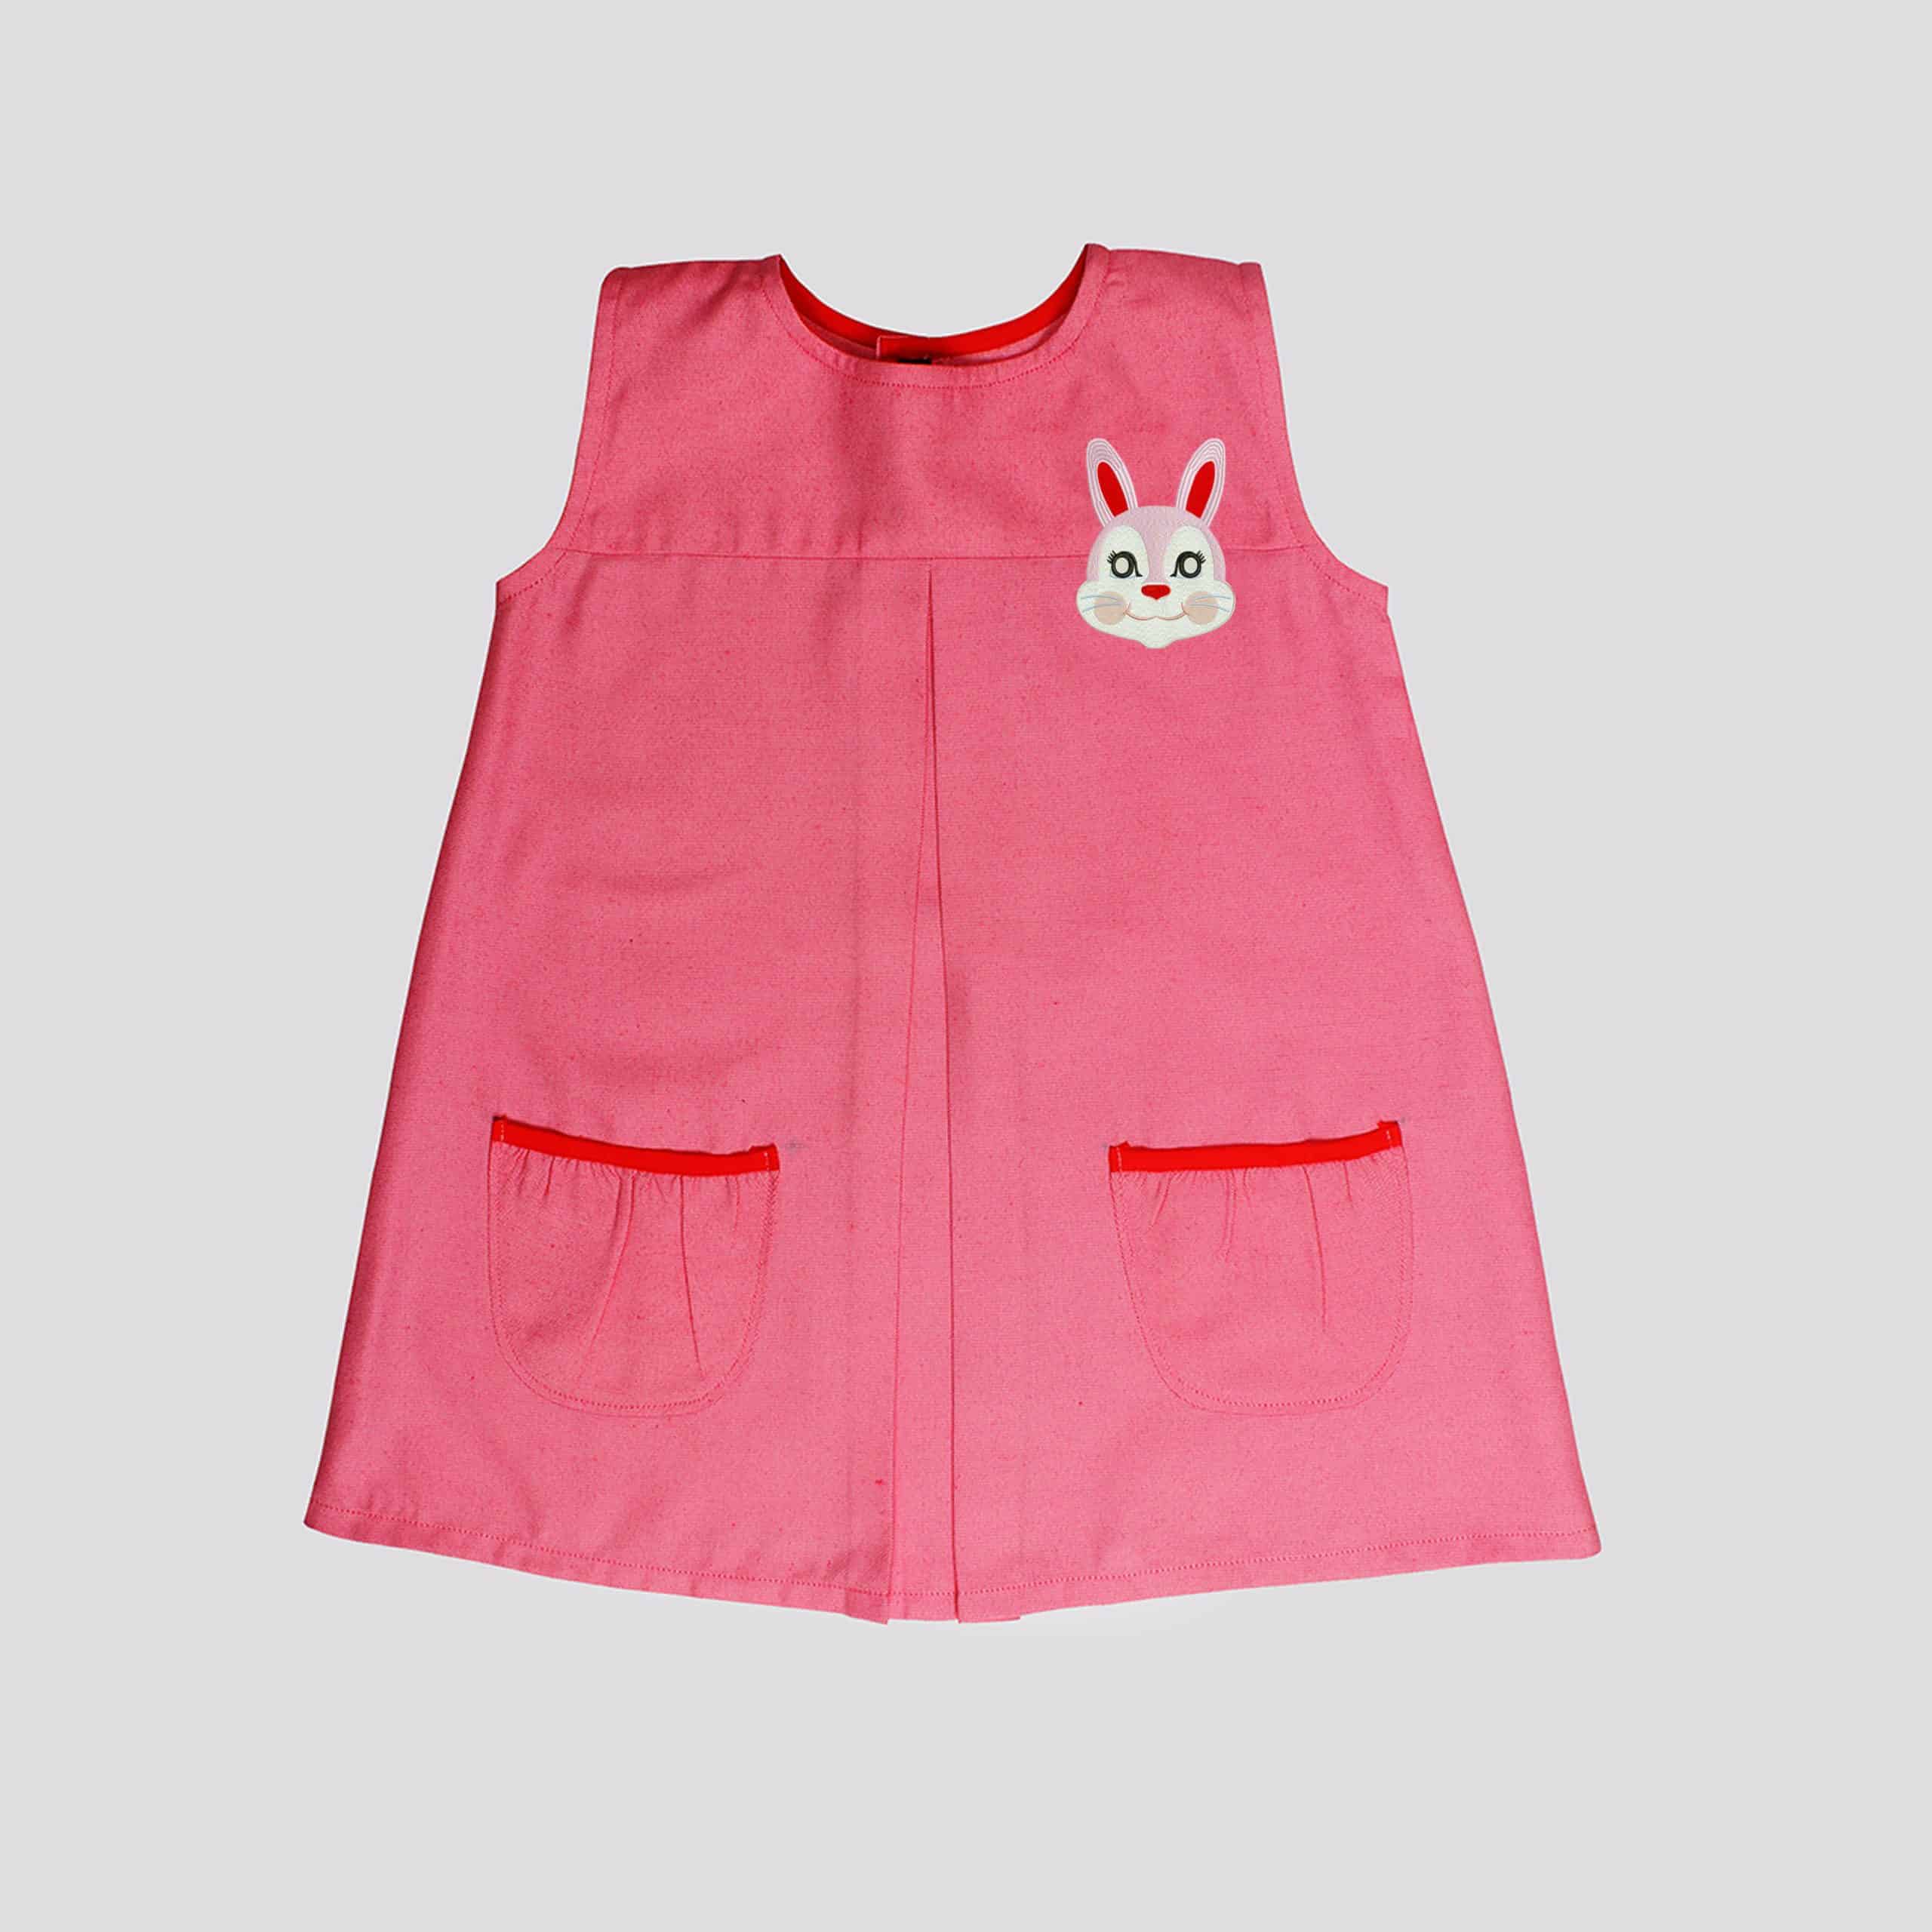 Girls yoke a-line dress with bunny print-RKFCW82